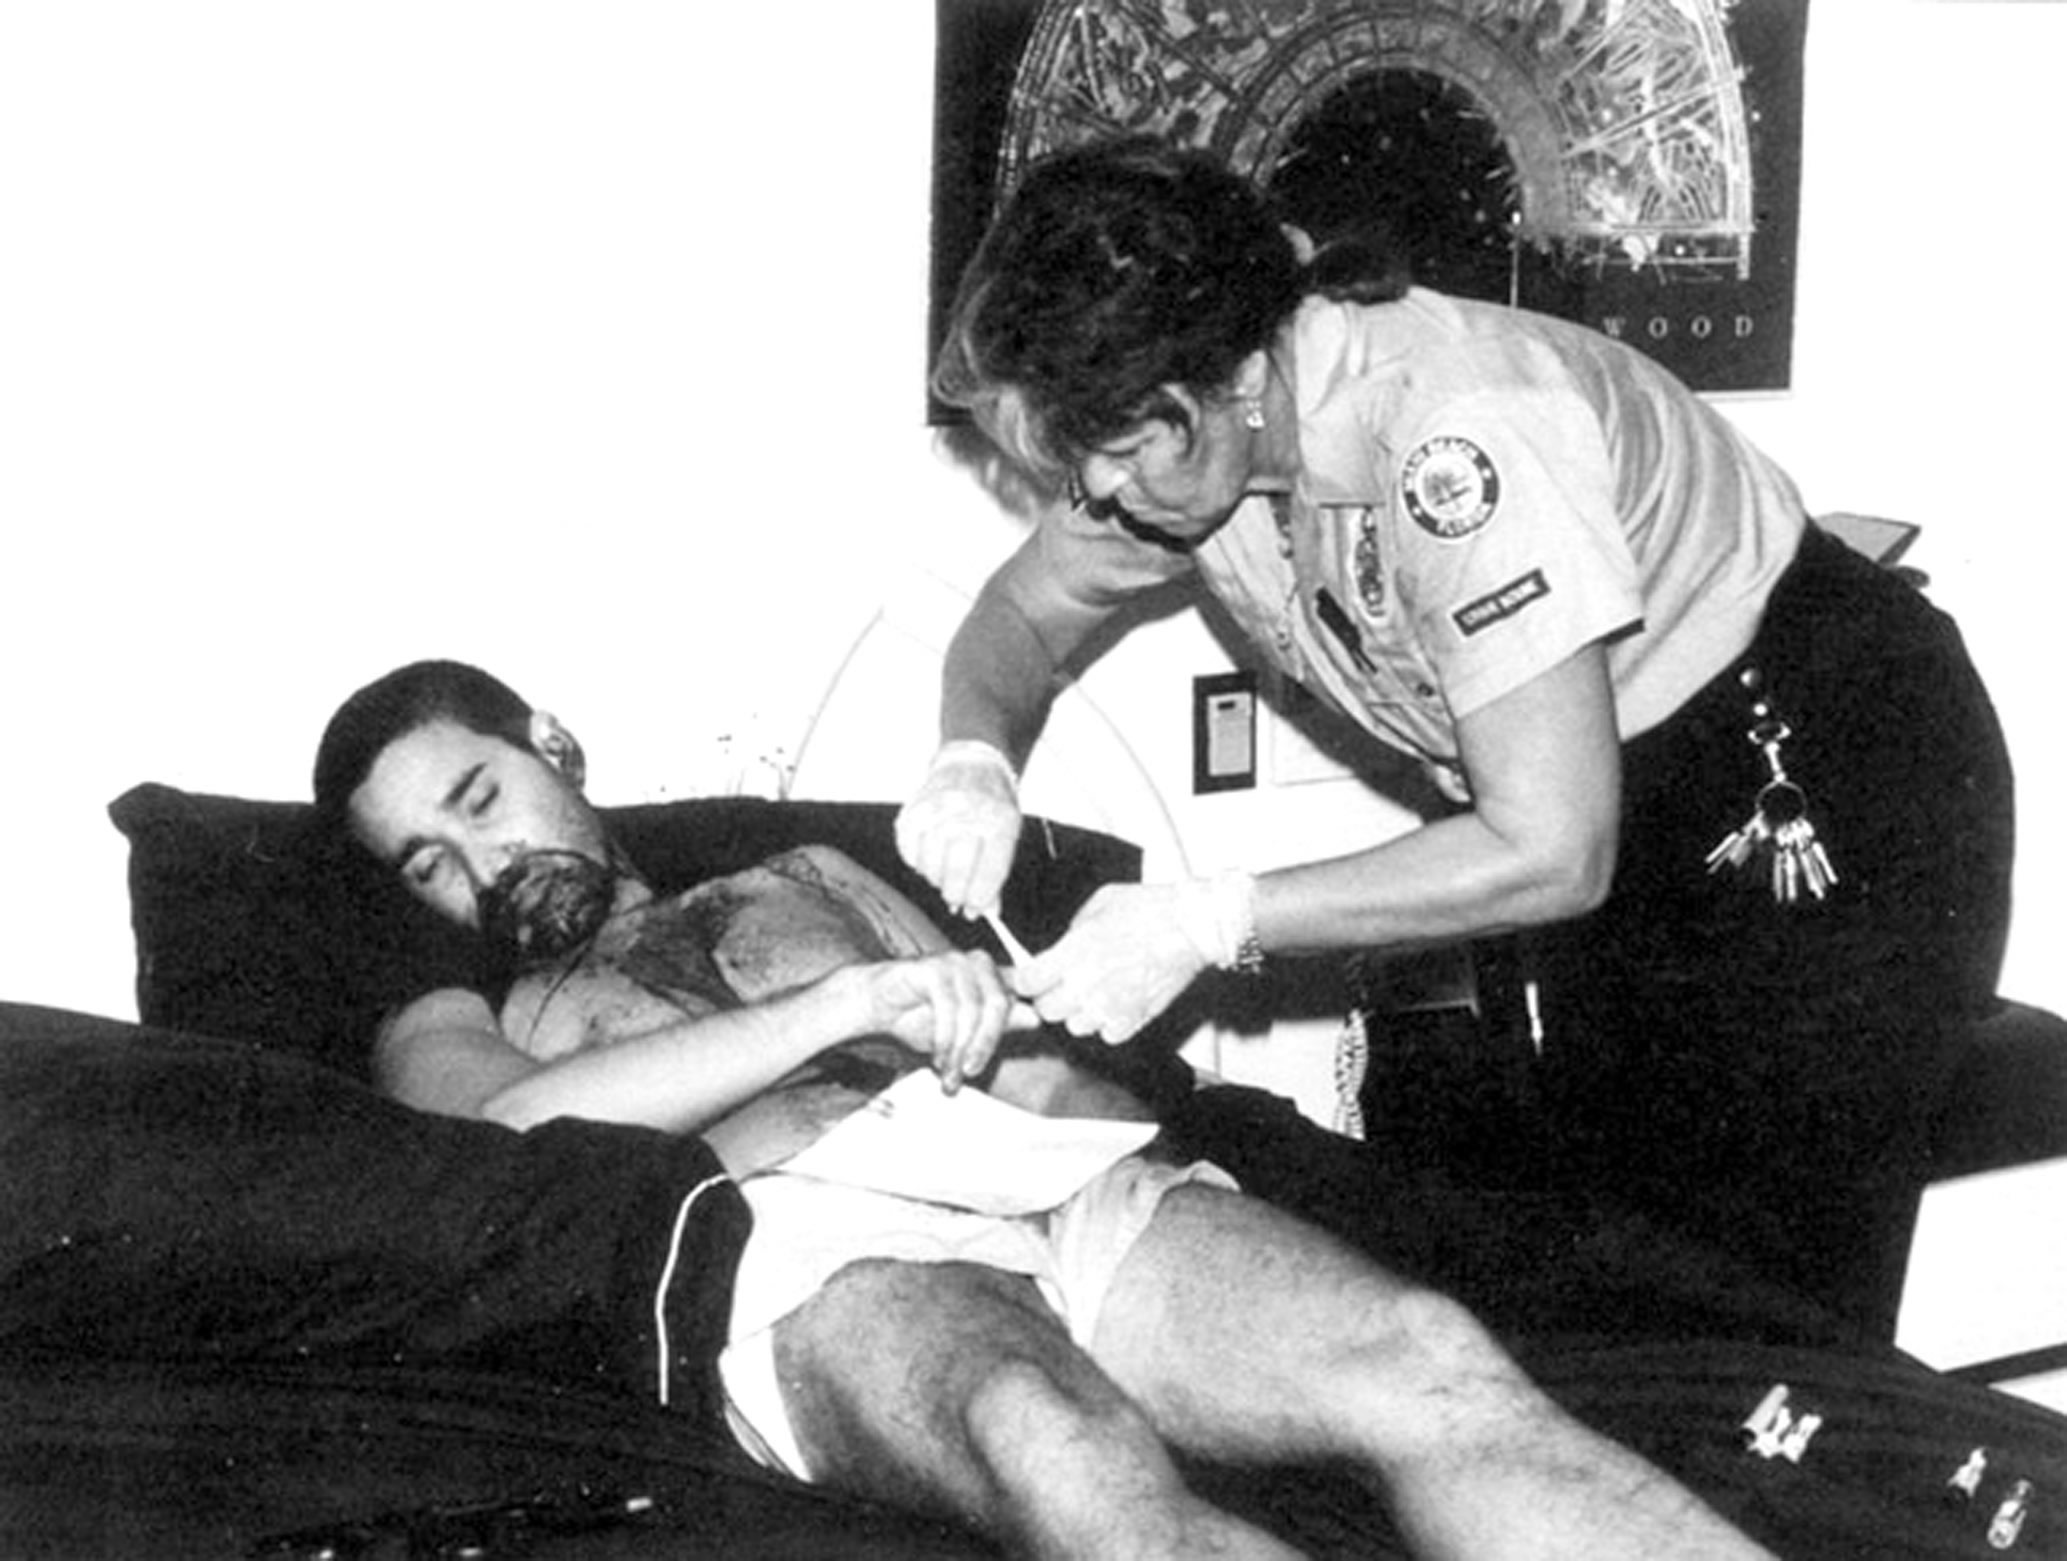 Perita retira as impressões digitais de Andrew Cunanan. Ele cometeu suicídio em 23 de julho de 1997, oito dias após matar Gianni Versace. Foto: Miami Police Department.